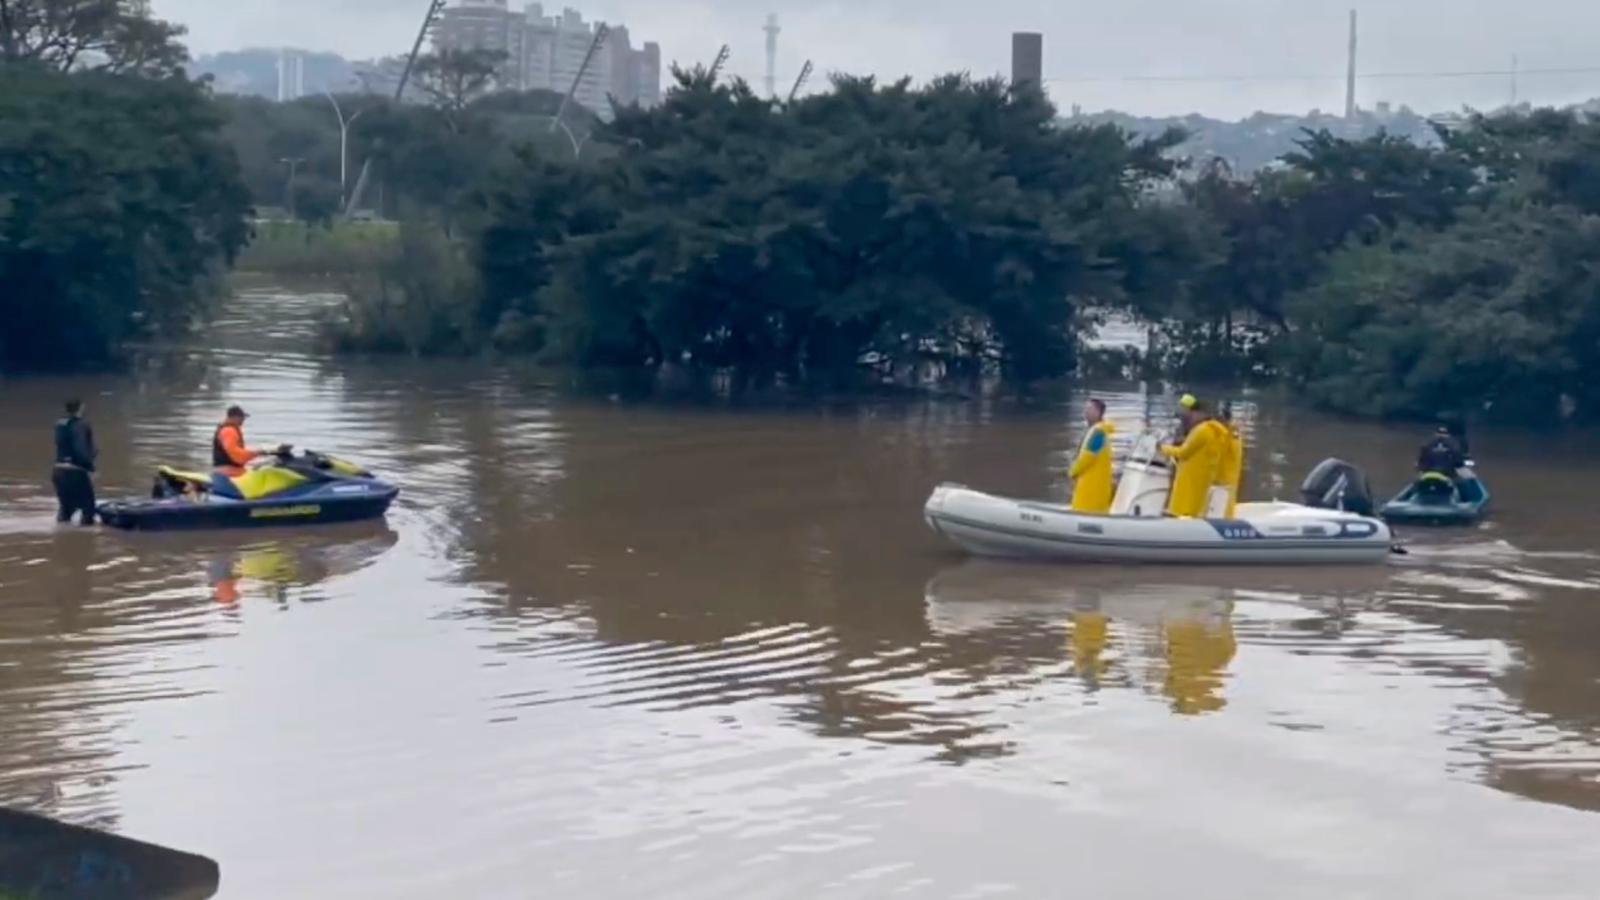 río en brasil afectado por inundaciones se acerca a niveles récord de crecimiento a medida que bajan las temperaturas